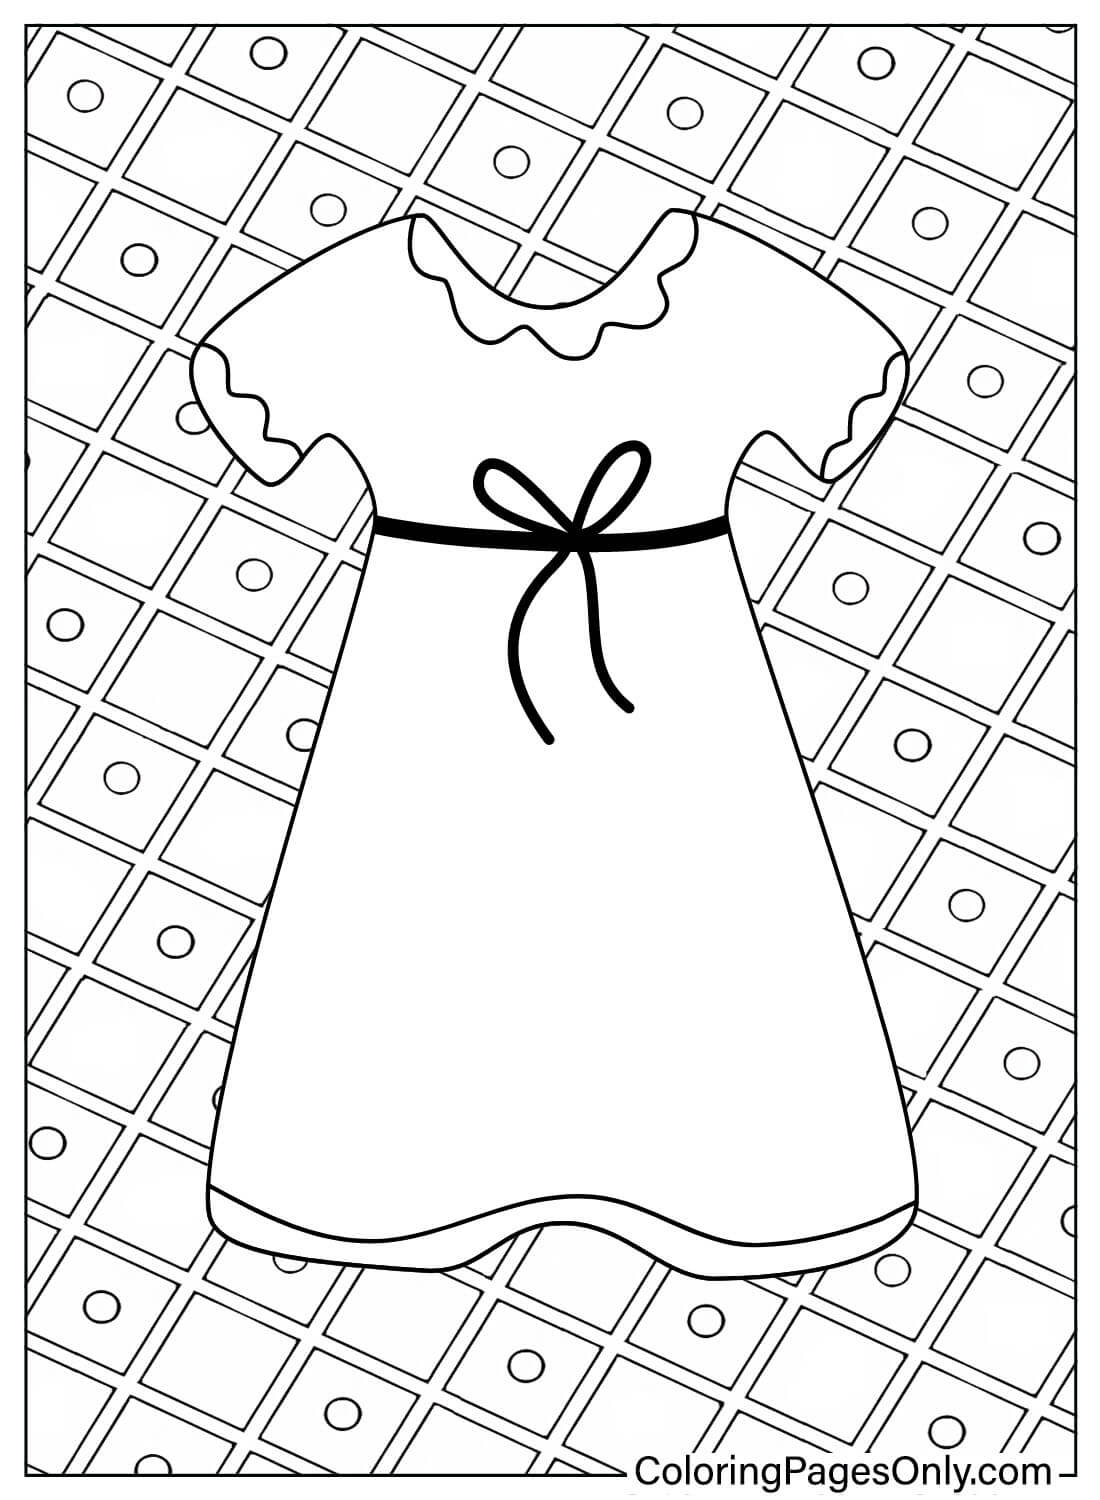 婴儿连衣裙着色页可从婴儿连衣裙打印